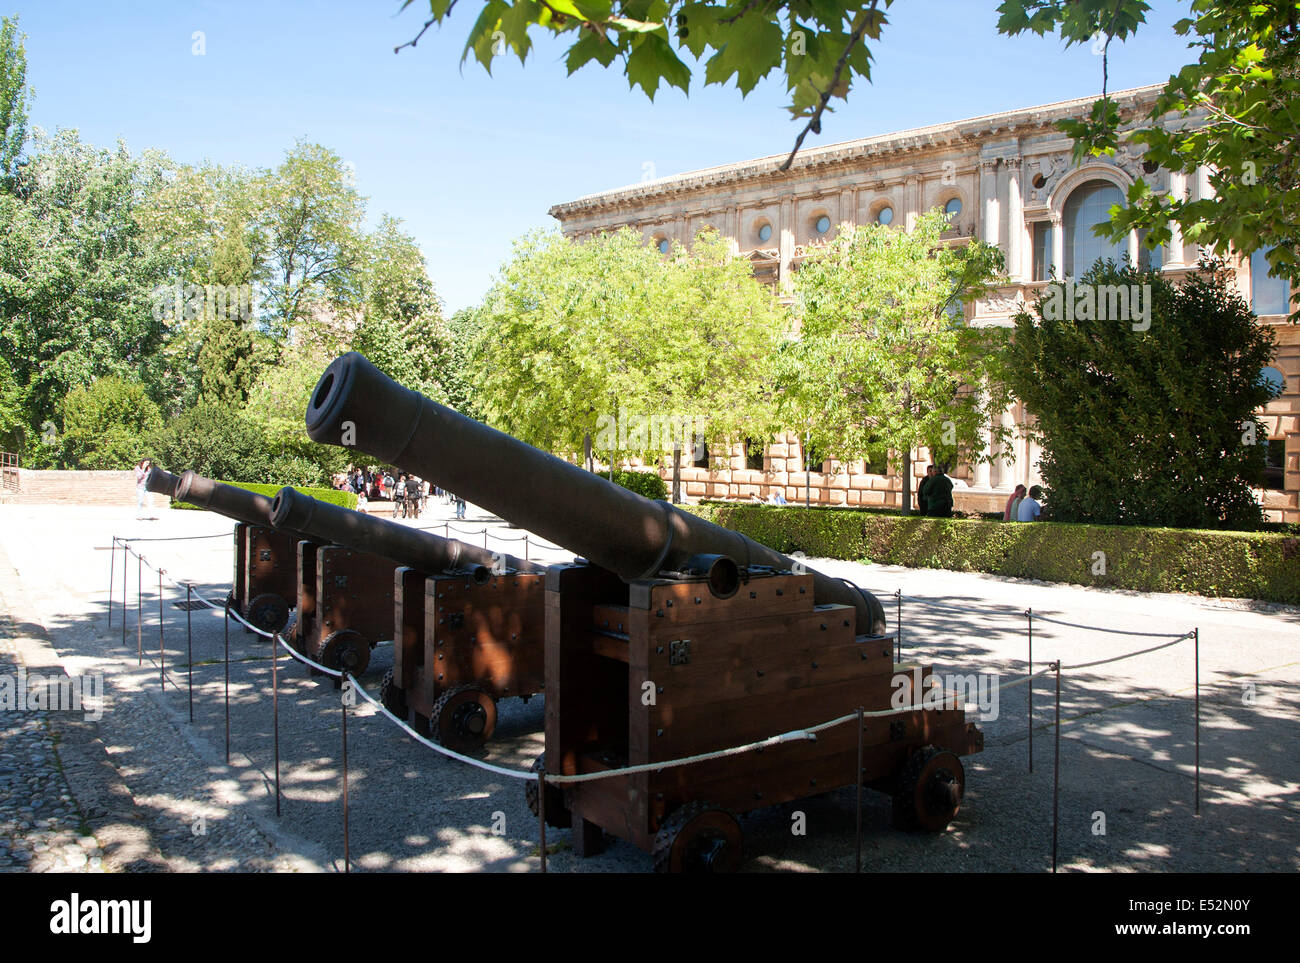 Antico metallo pistole cannon nel complesso Alhambra di Granada, Spagna Foto Stock